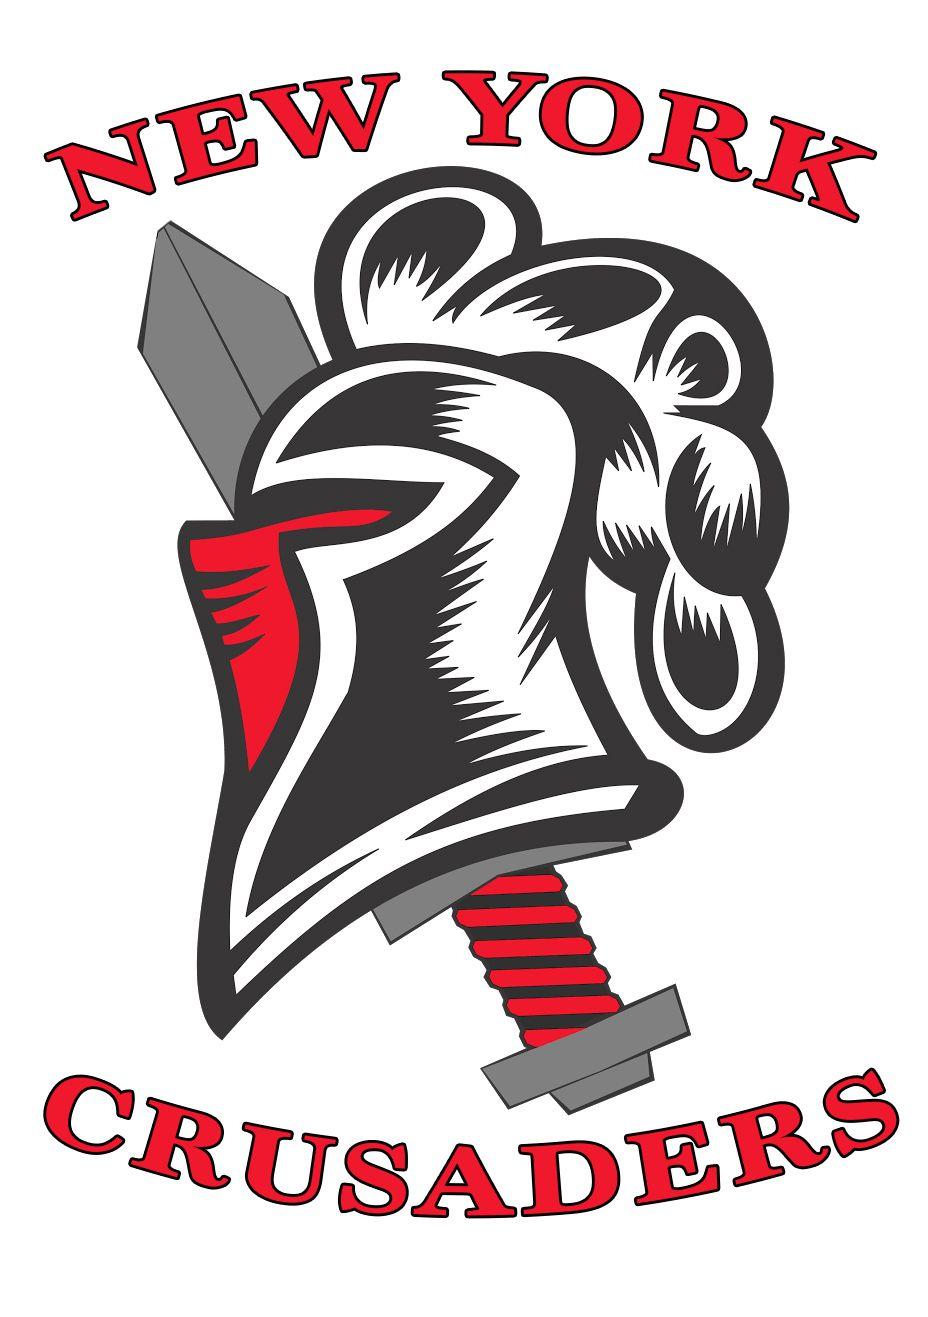 Crusader Football Logo - New York Crusaders - Sports Non-Profit Organization